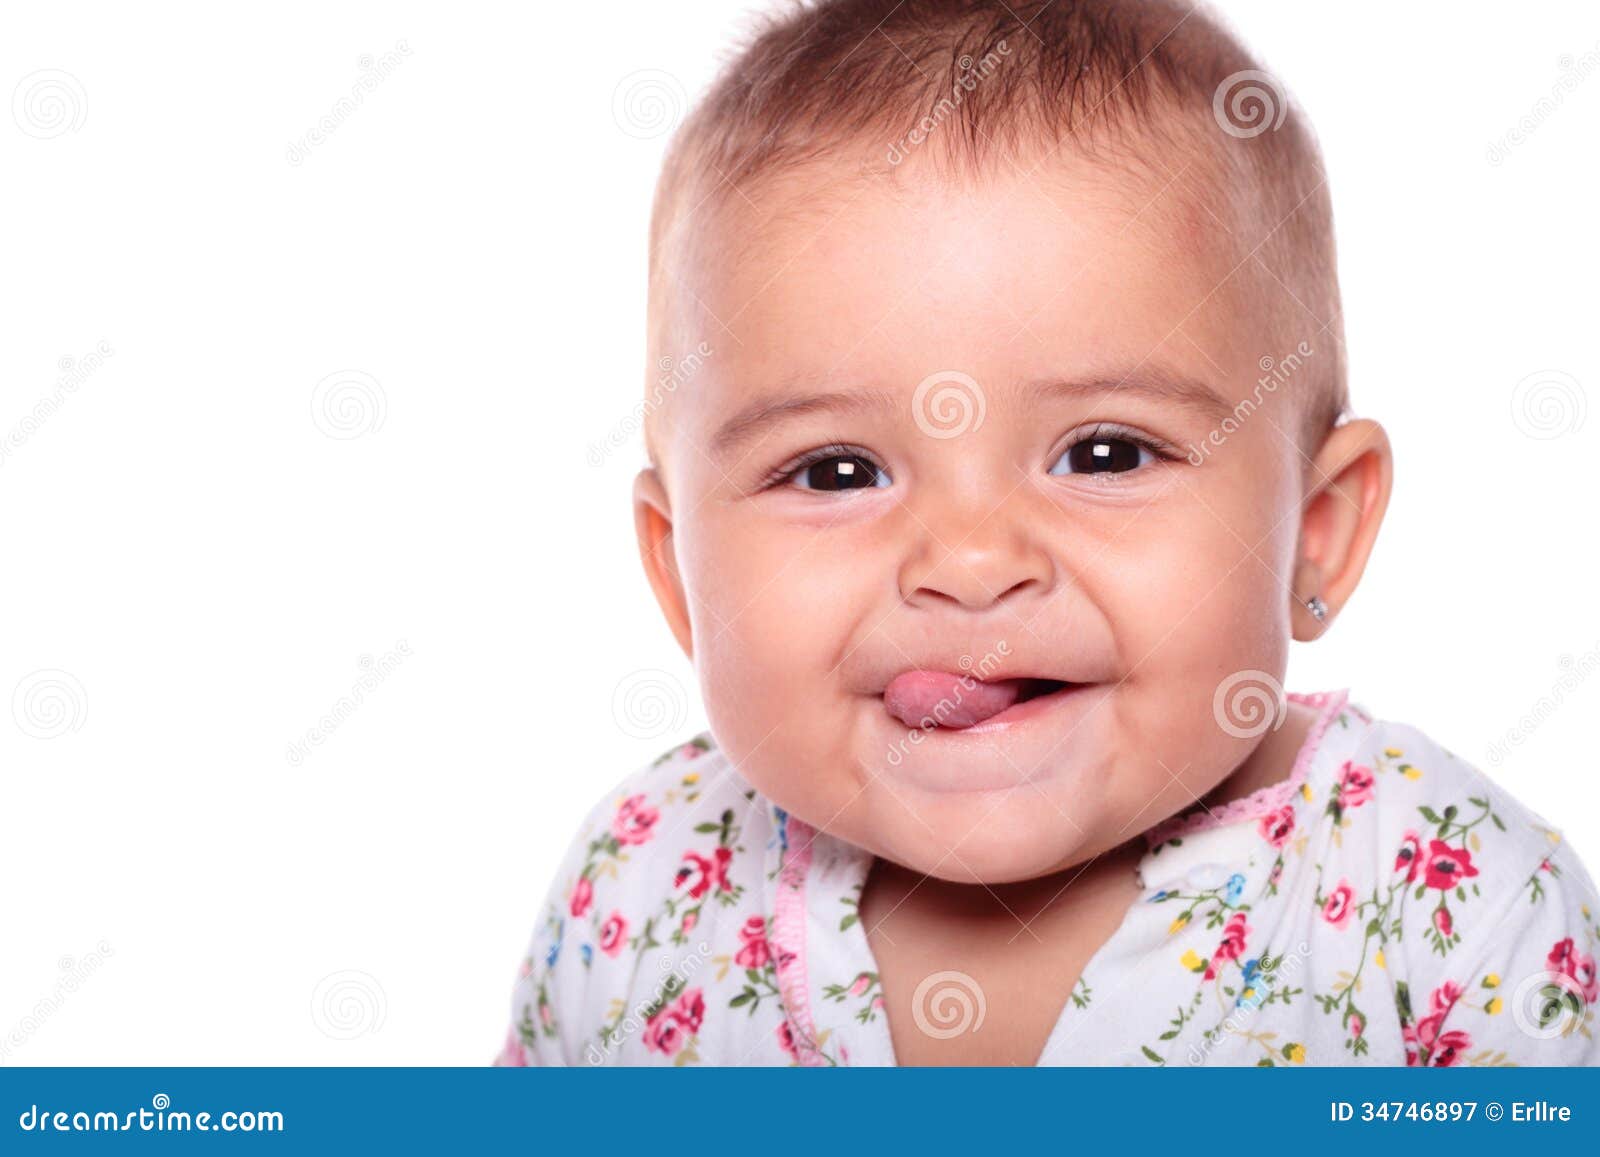 Sourire De Bebe Image Stock Image Du Nourrisson Duree